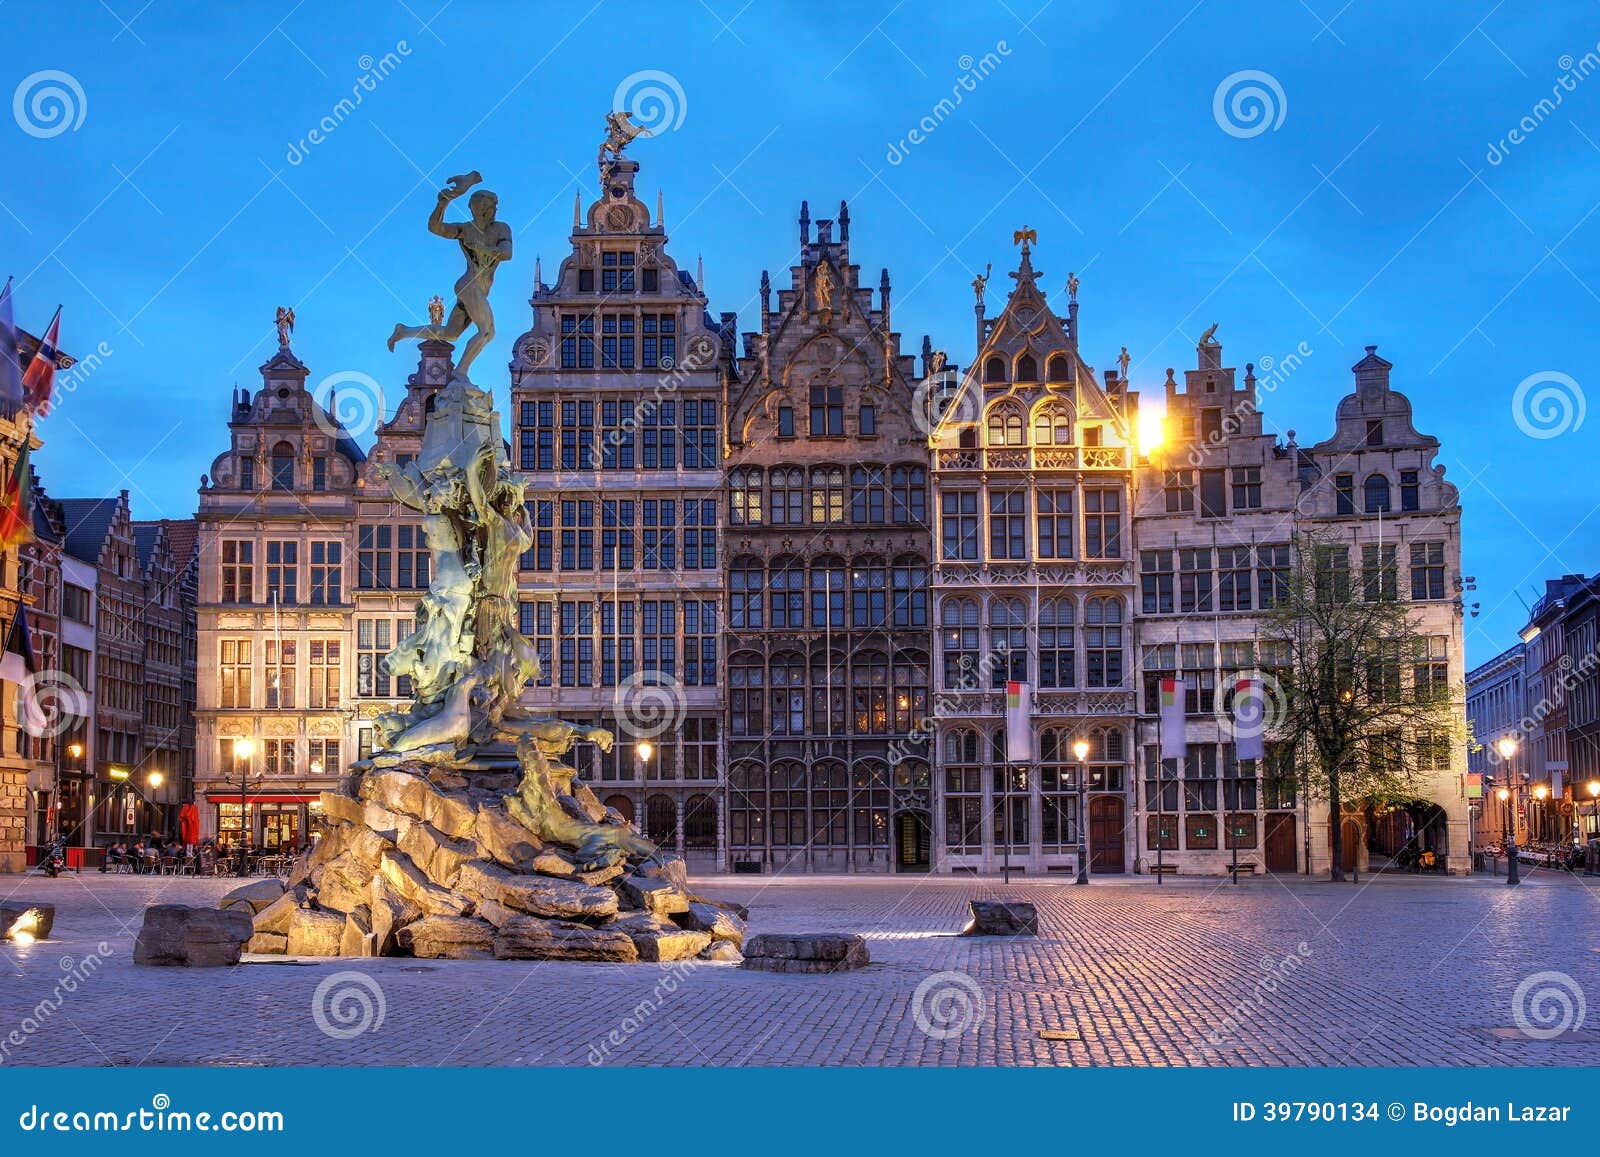 Grote Markt, Antwerp, Belgium Stock Photo - Image of ...